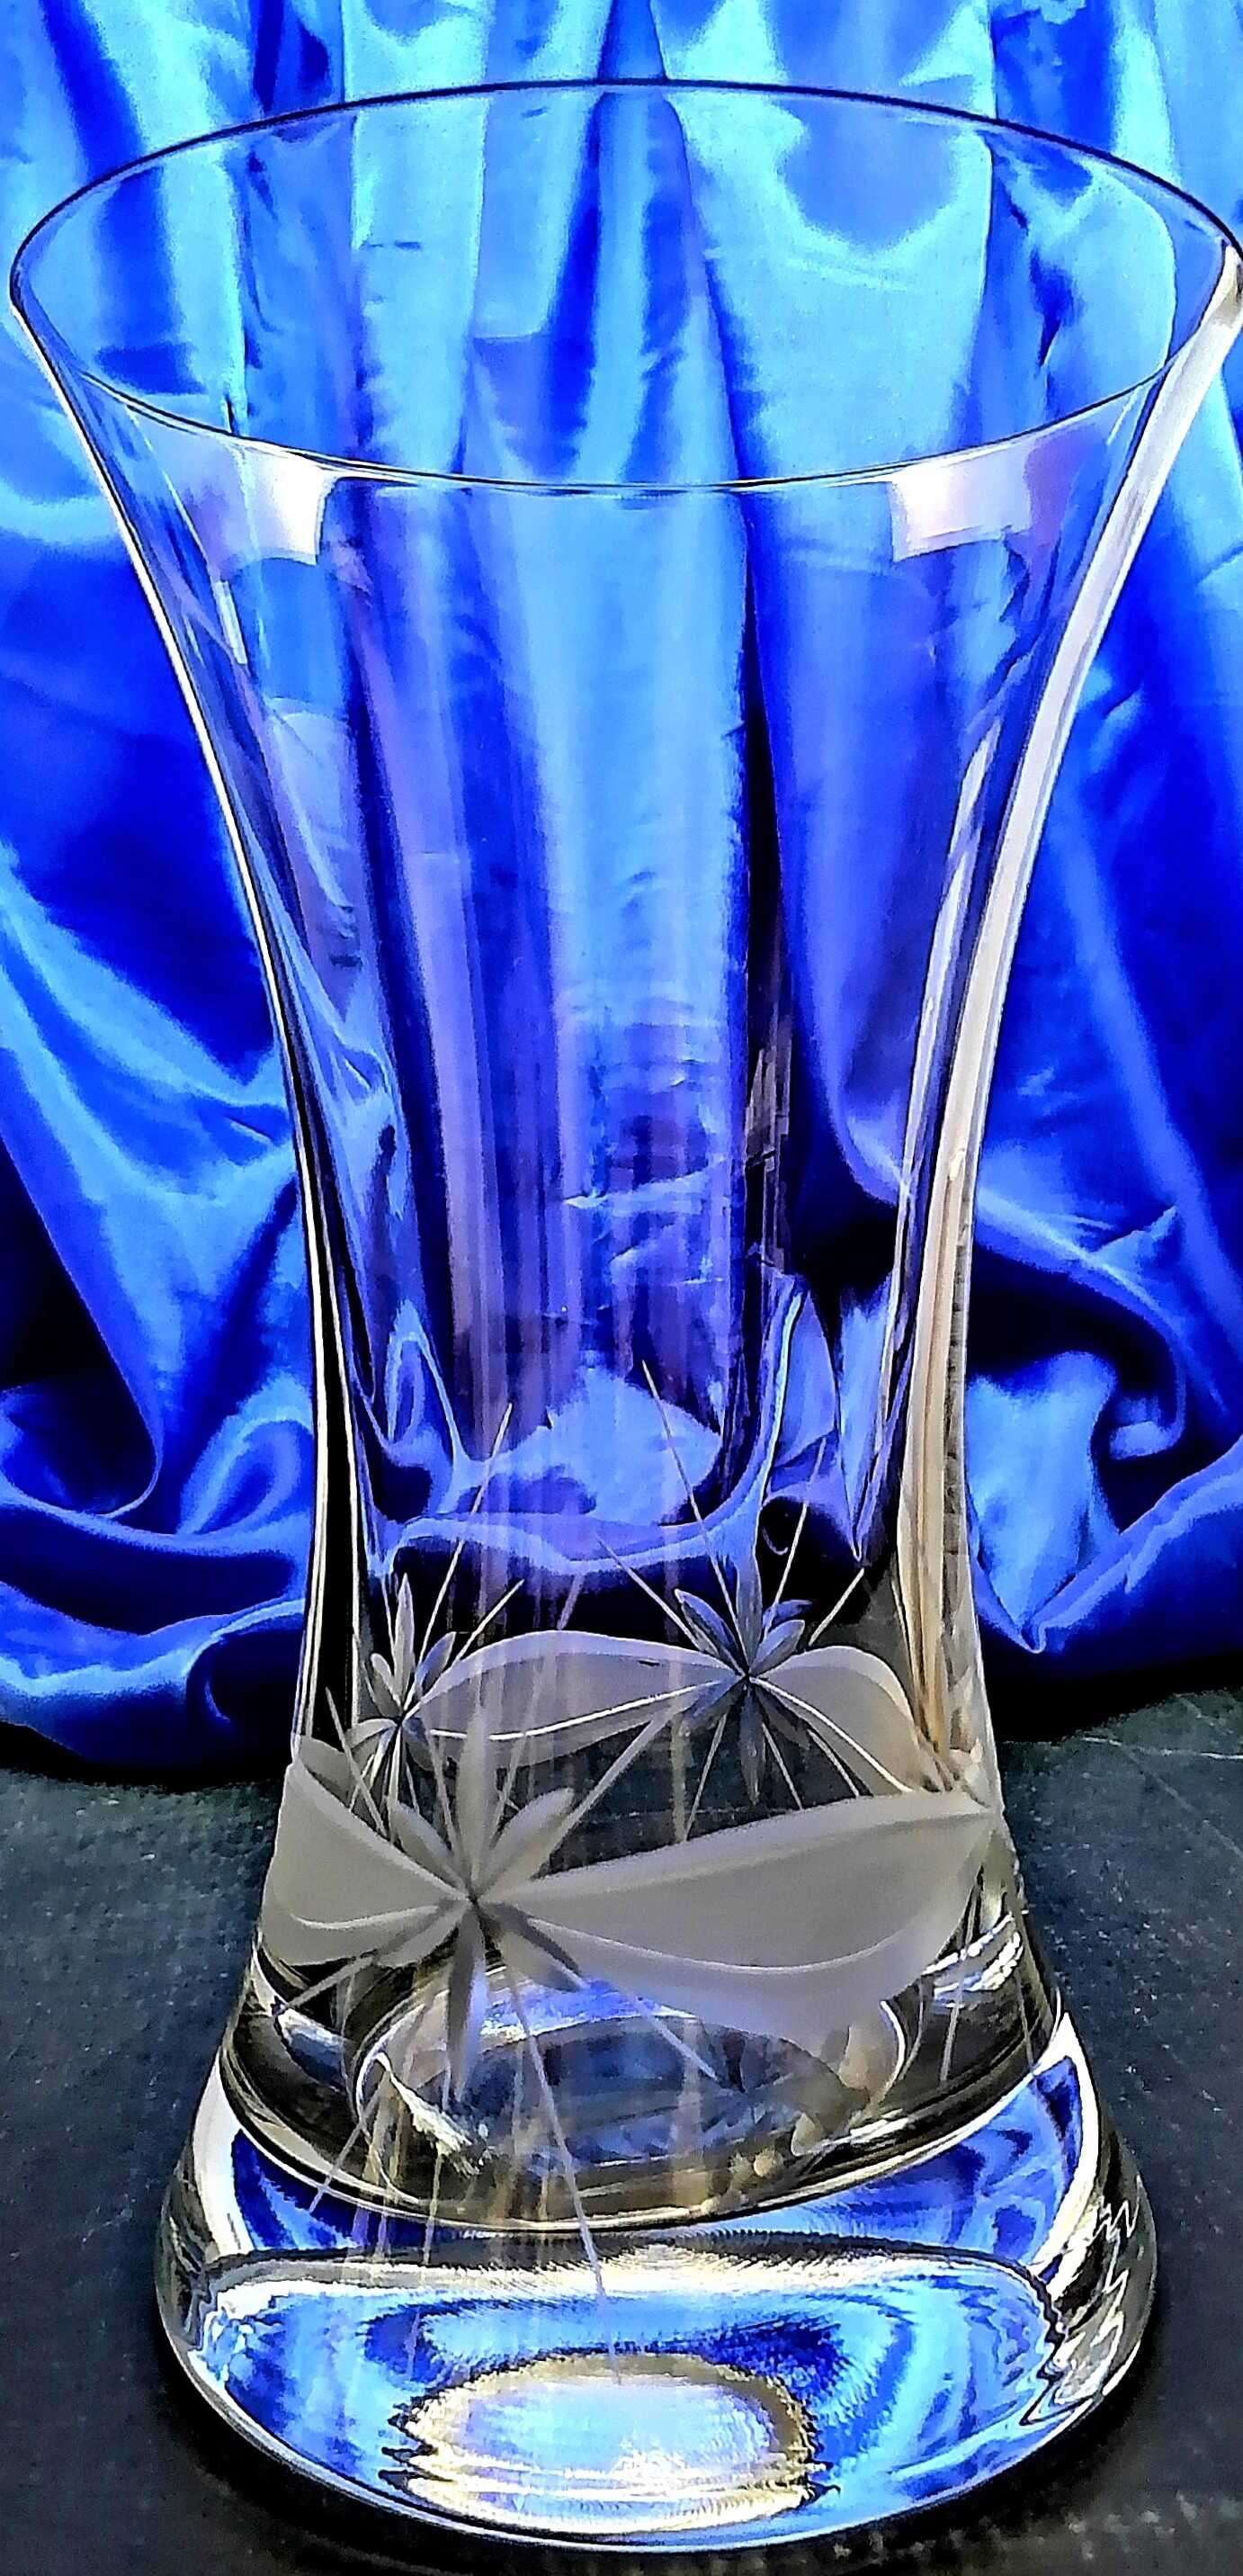 LsG-Crystal Váza skleněná křišťálová broušená rytá dekor Kanta okrasné balení WA-889 200 x 140 mm 1 Ks.